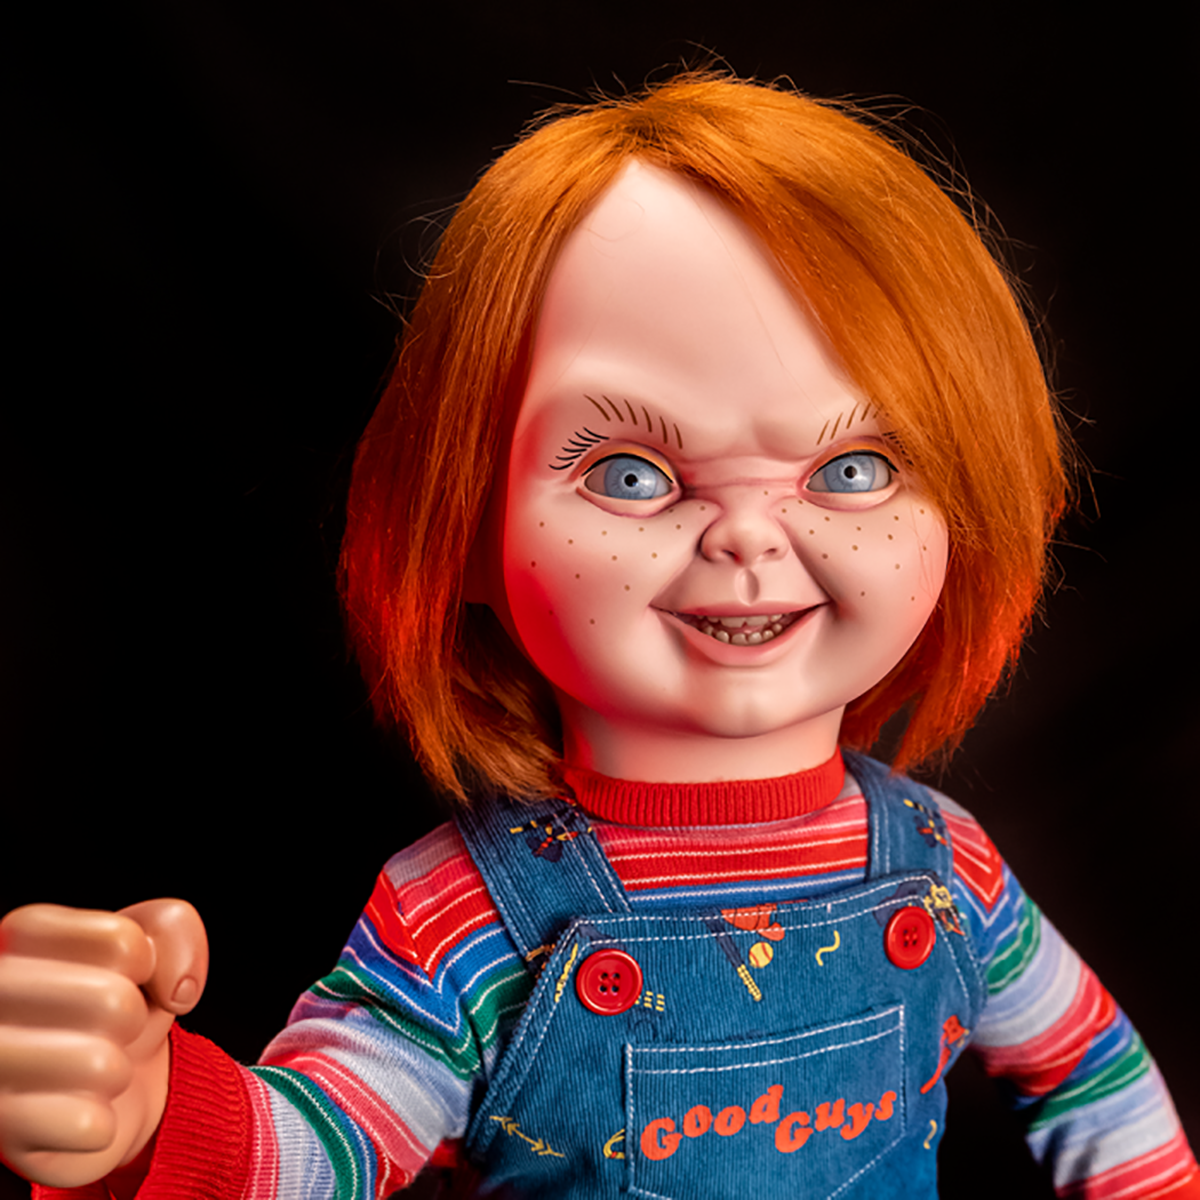 Ce site commercialise une réplique parfaite de la poupée tueuse Chucky